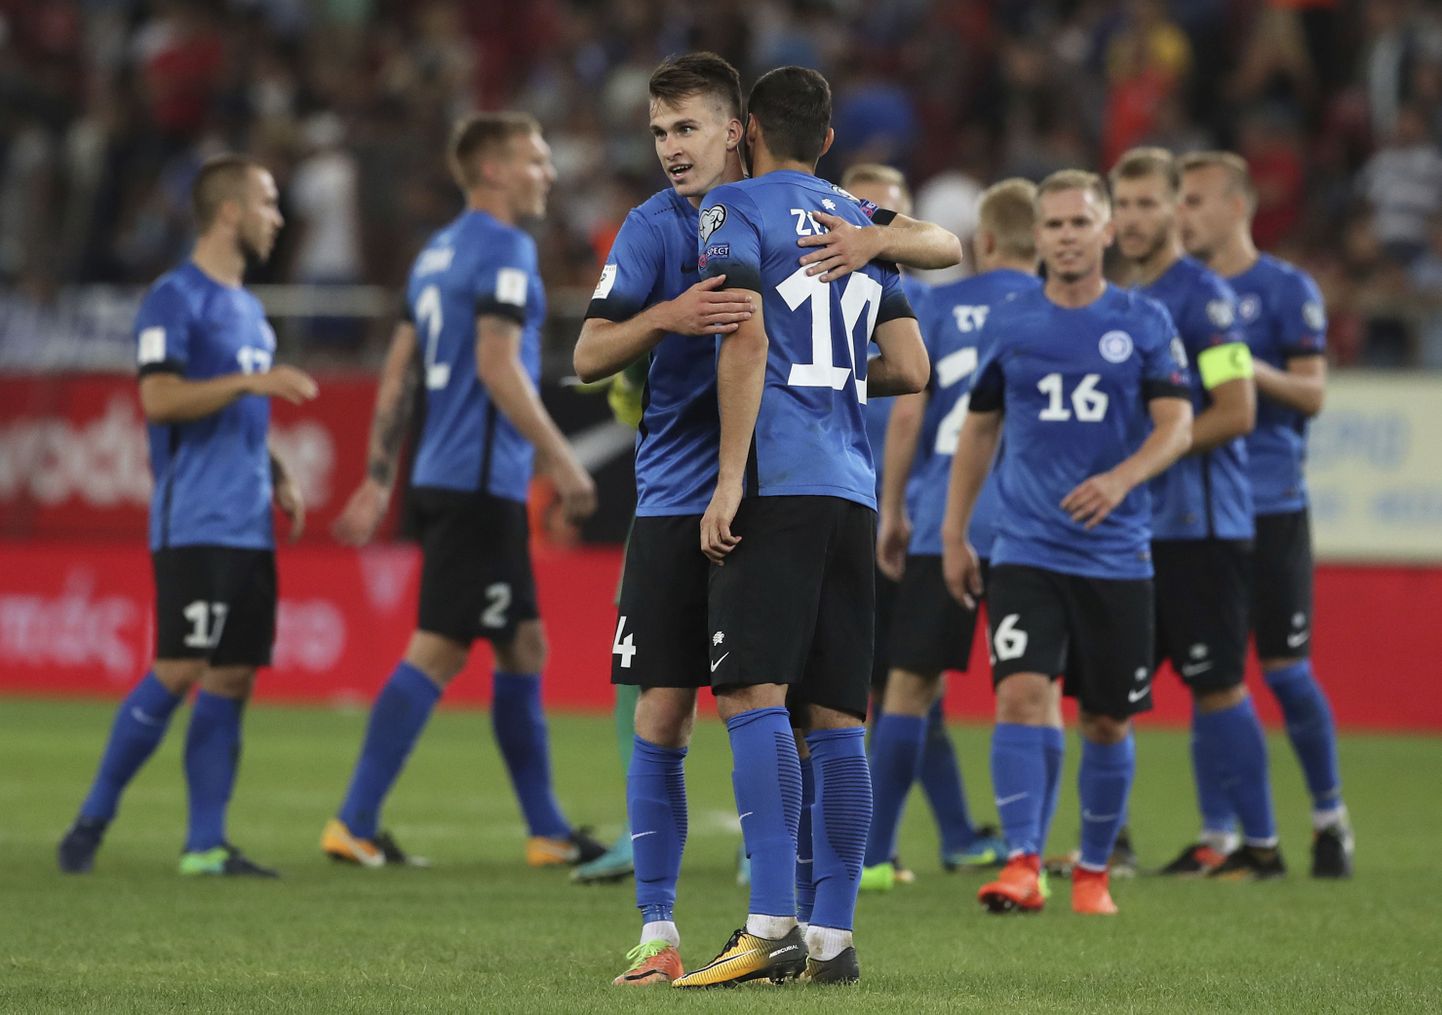 Eesti jalgpallikoondis tegi neljapäeval võõrsil kiiduväärse 0:0 viigi Kreekaga. Täna on koduväljakul vastas Küpros.